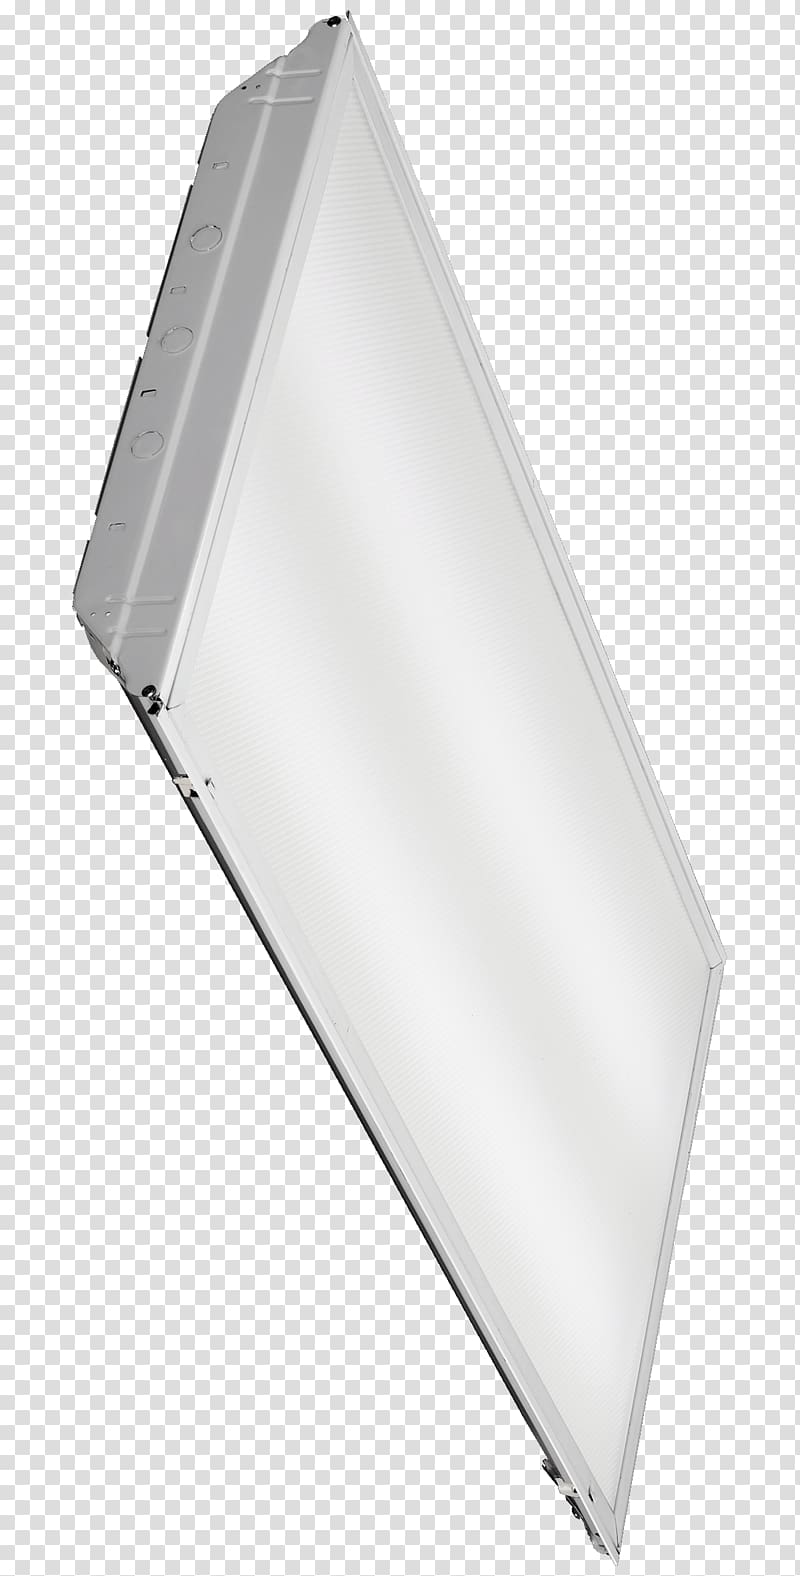 Lighting Troffer Light fixture Light-emitting diode, t8 fluorescent light fixtures transparent background PNG clipart